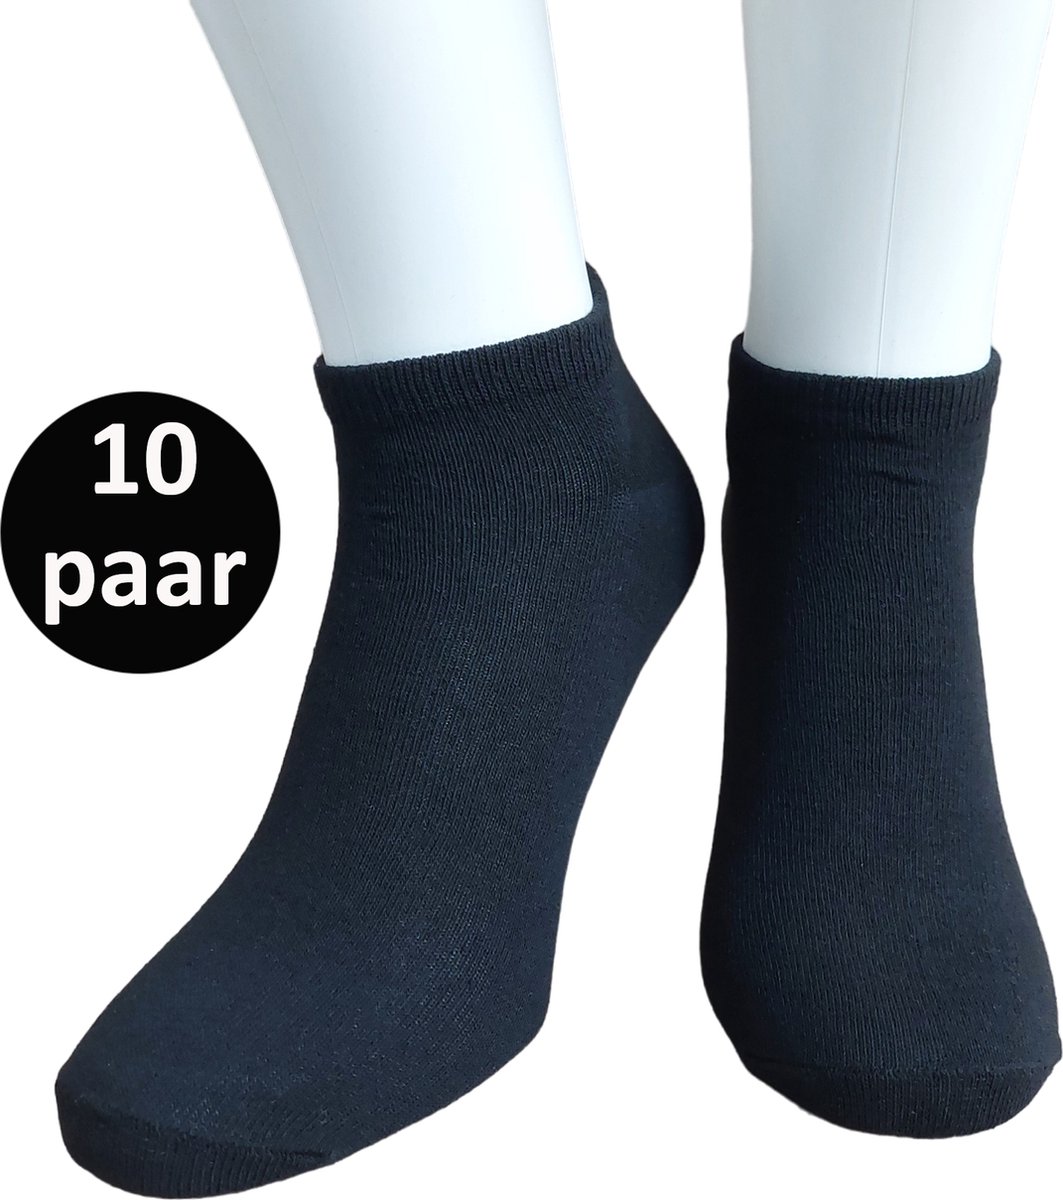 WeirdoSox Sneaker Sokken - 10 paar - Unisex - Zwart - Maat 35/38 - Enkel sokken - Korte sokken